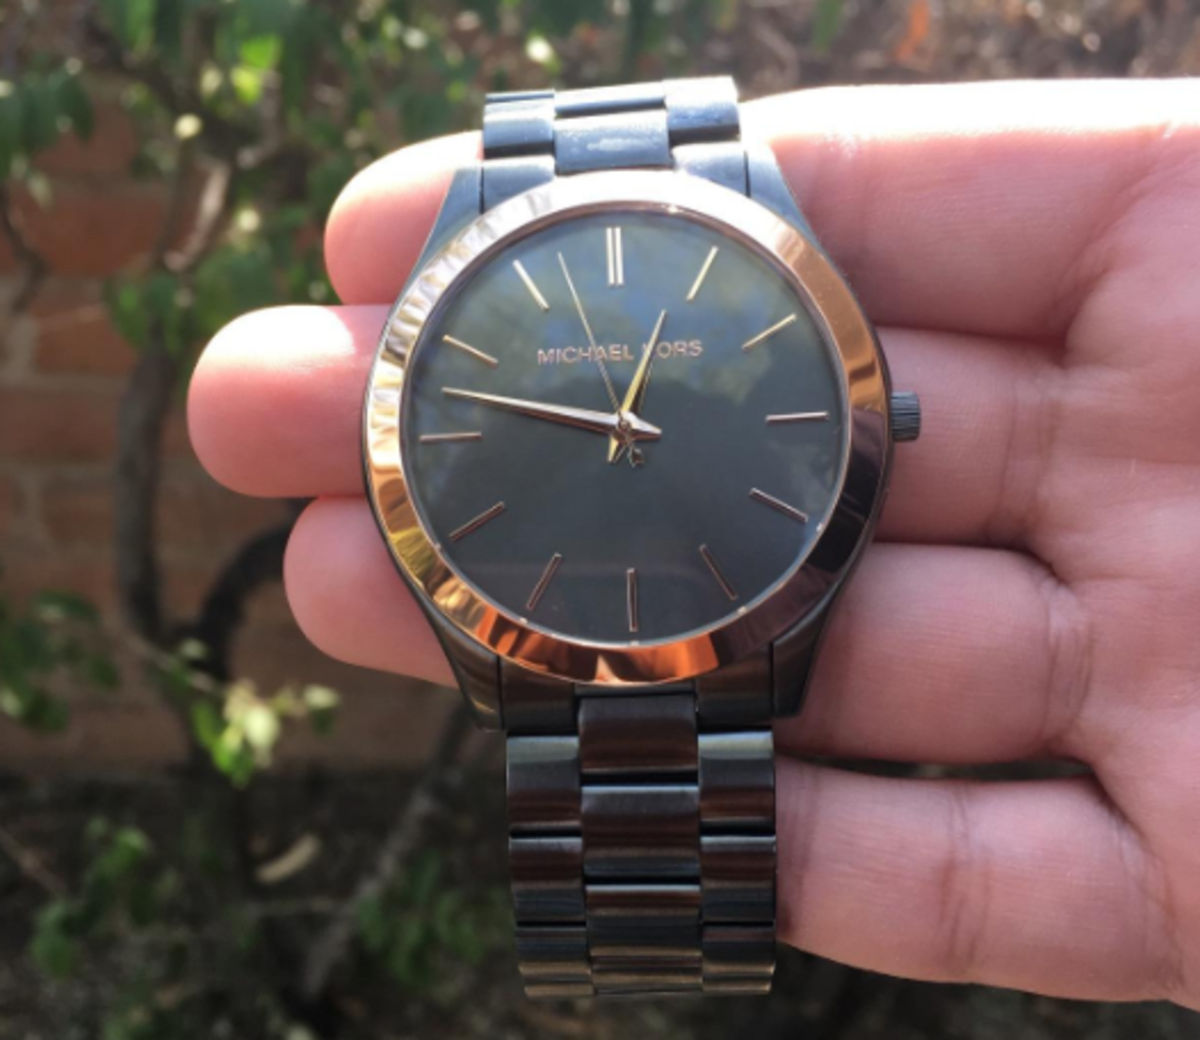 Michael Kors Men's Slim Runway Quartz Watch (under $100)